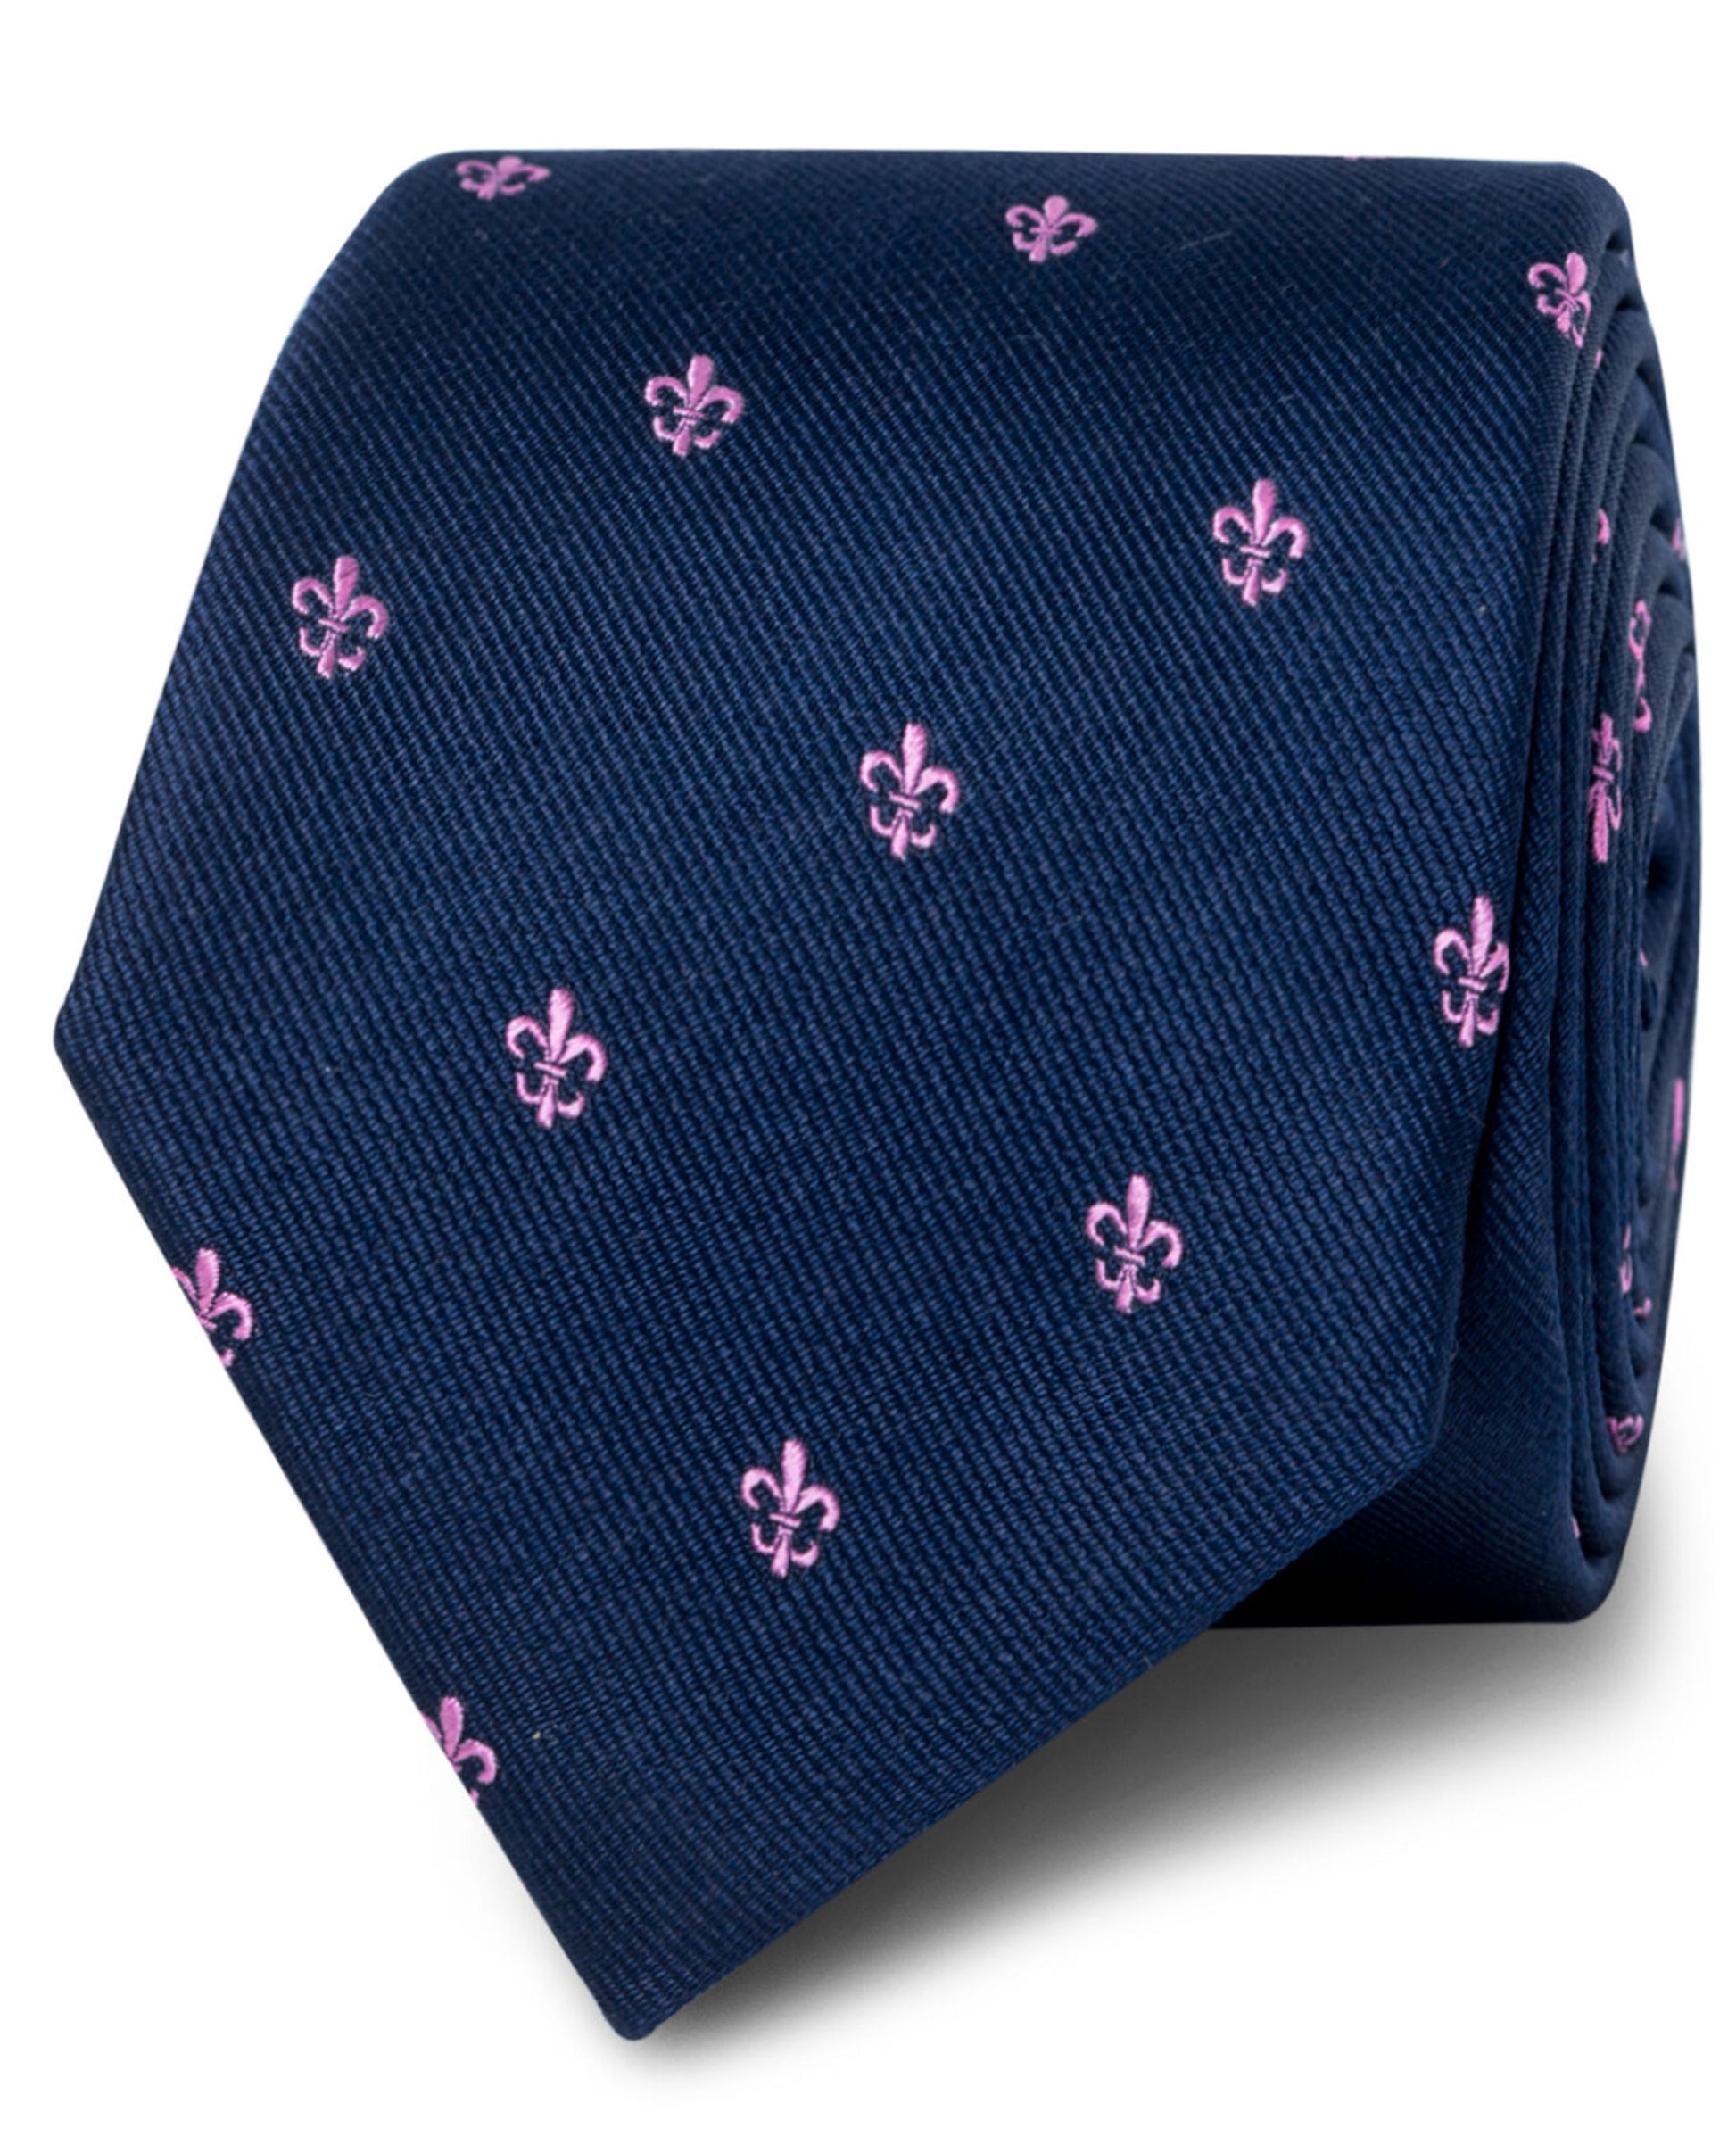 Image 1 of Navy & Pink Fleur de Lys Tie